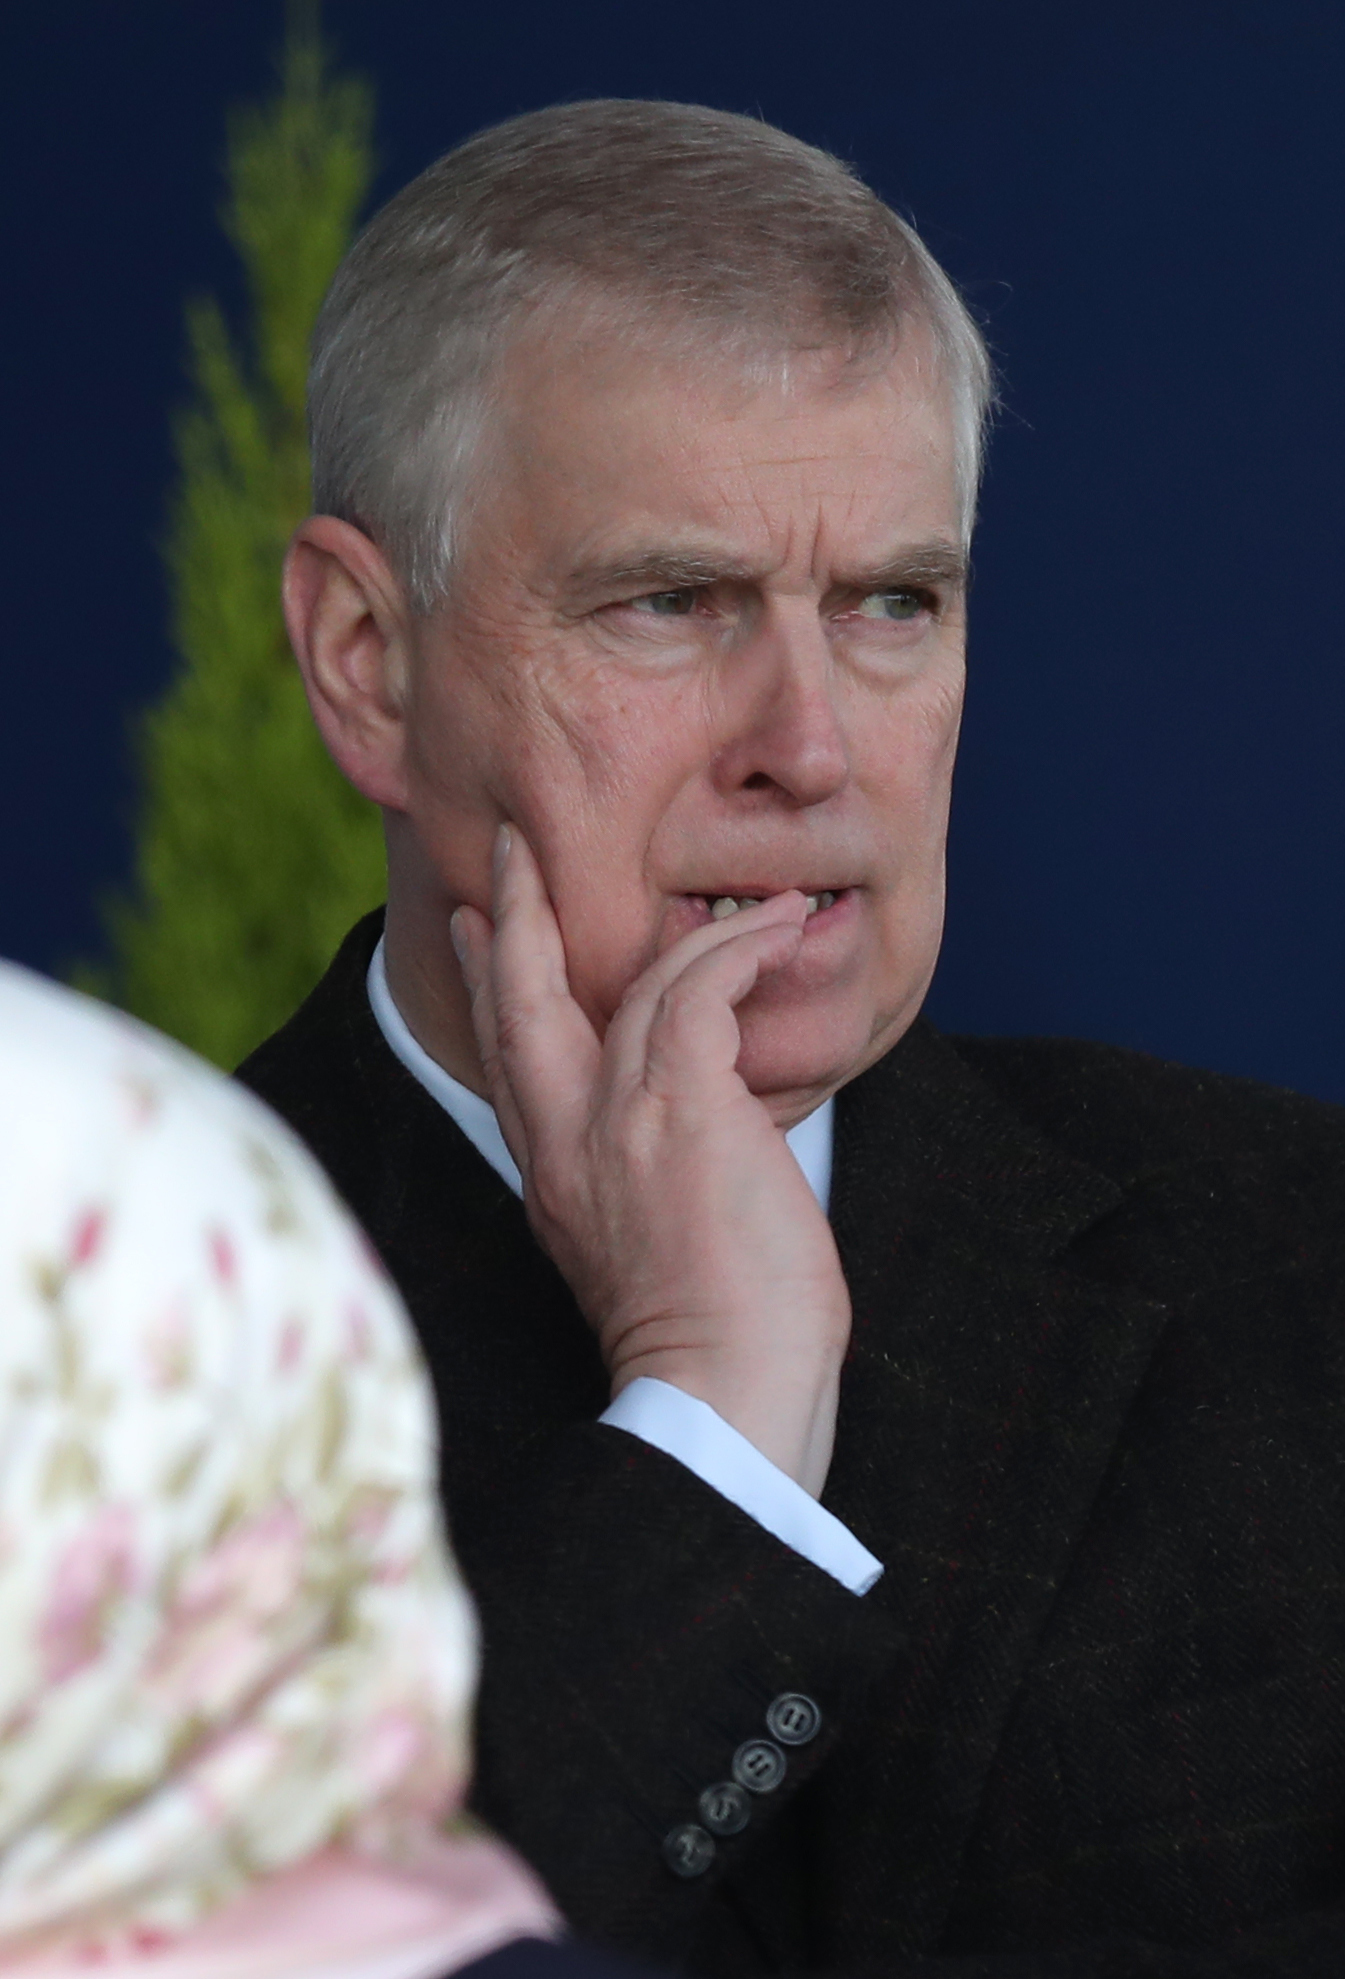 El duque de York quiere enmendar el escándalo de abuso sexual, se dice